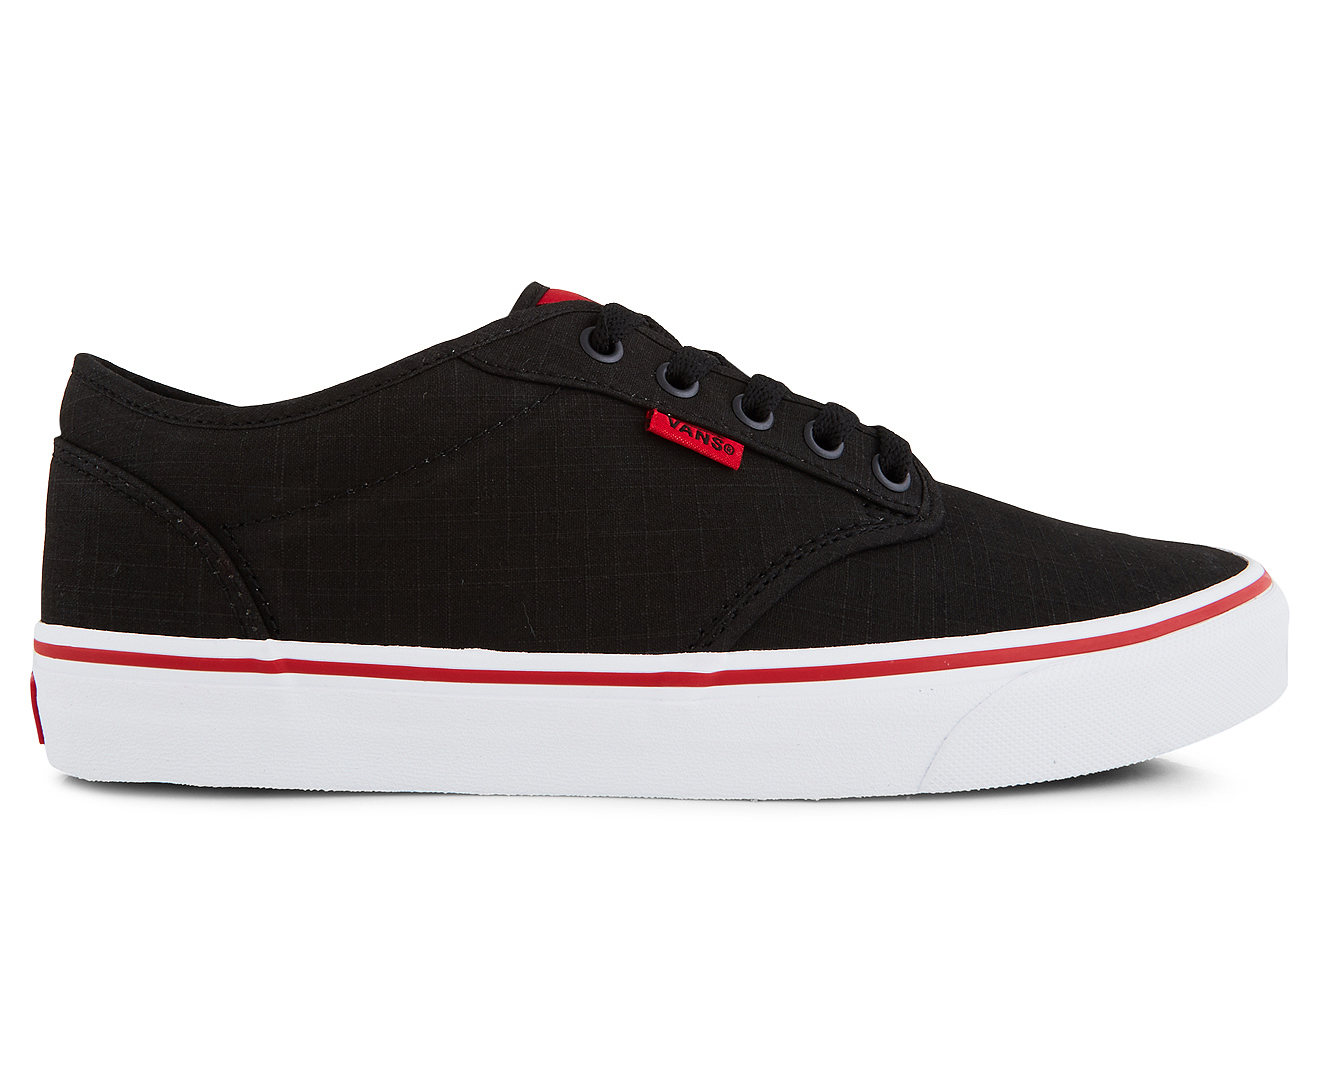 Vans Men's Atwood Rock Textile Shoe - Black/Red | Catch.com.au